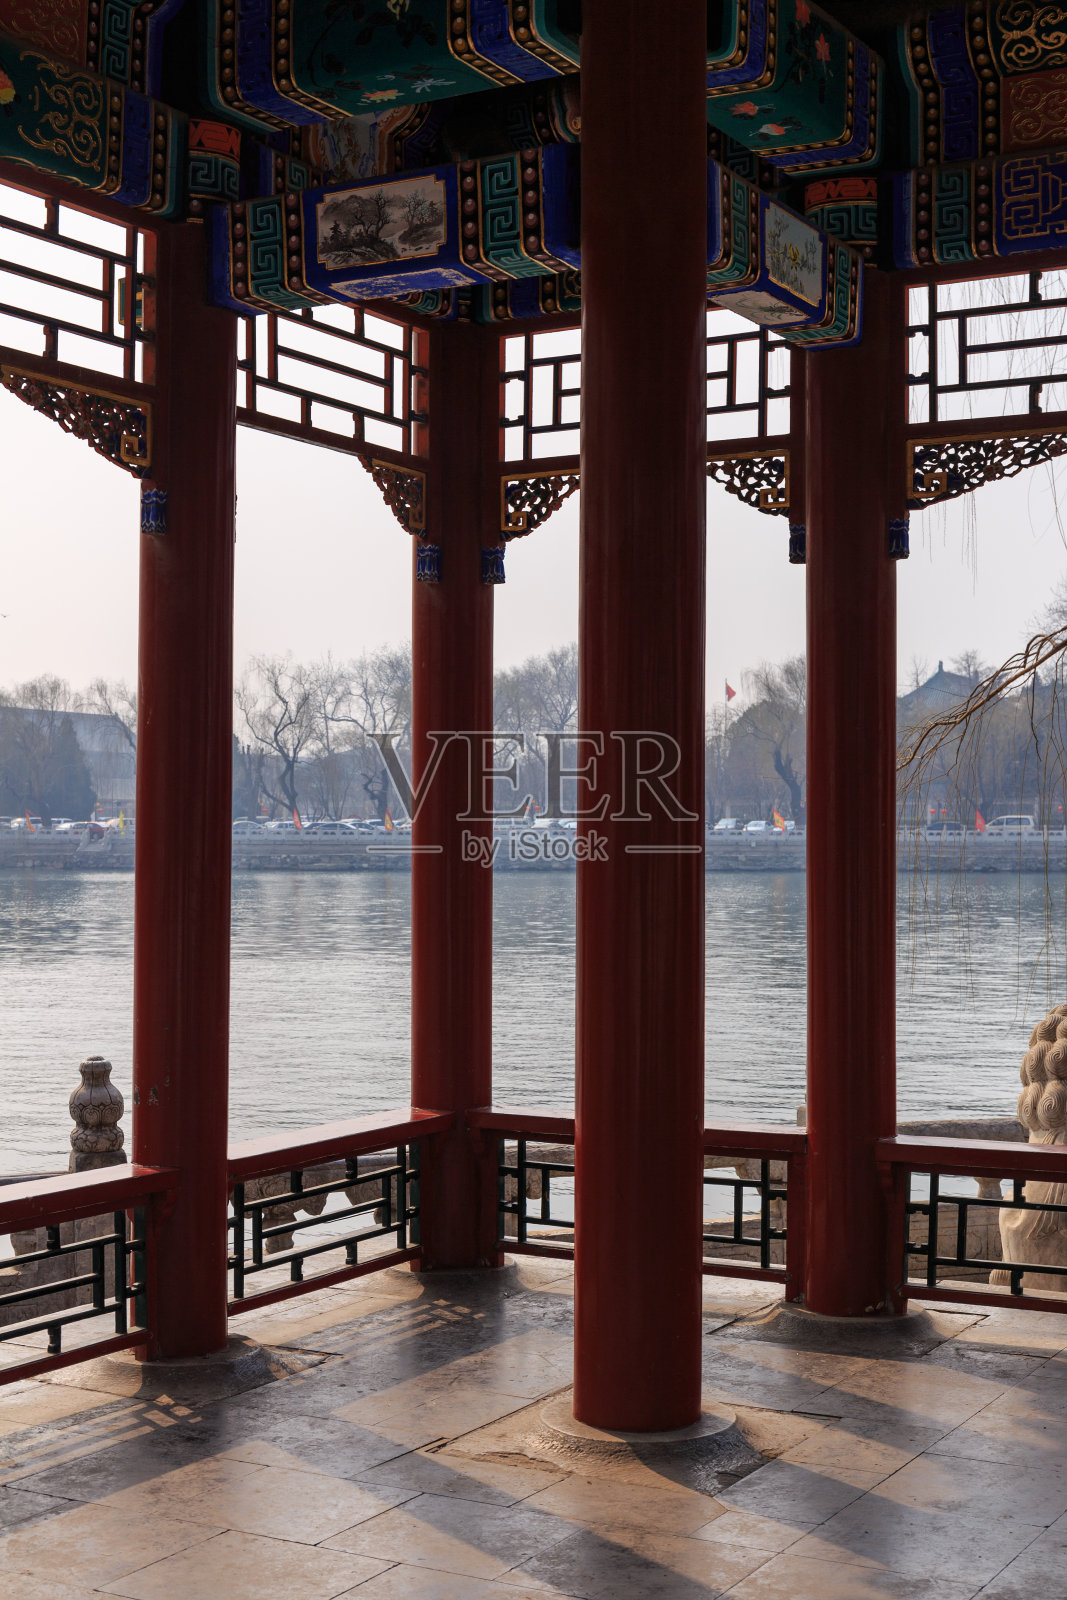 中国的湖边展馆照片摄影图片